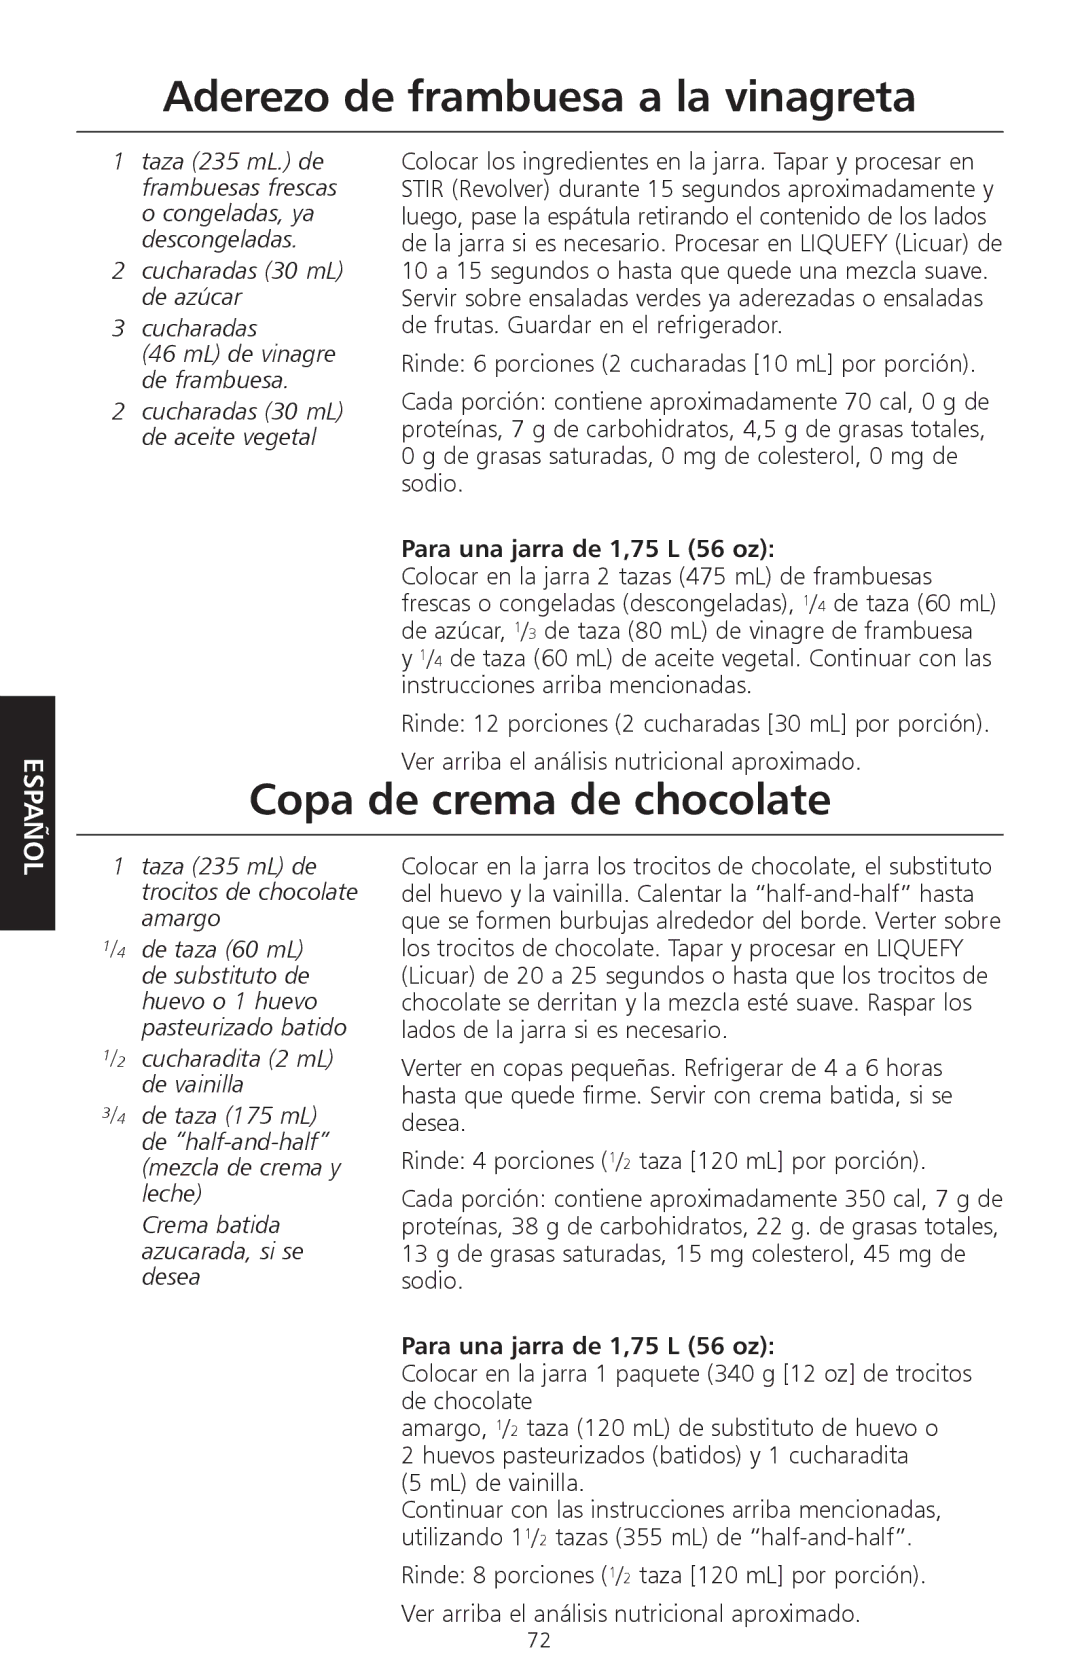 KitchenAid KSB560, KSB570, KSB580 manual Aderezo de frambuesa a la vinagreta, Copa de crema de chocolate 